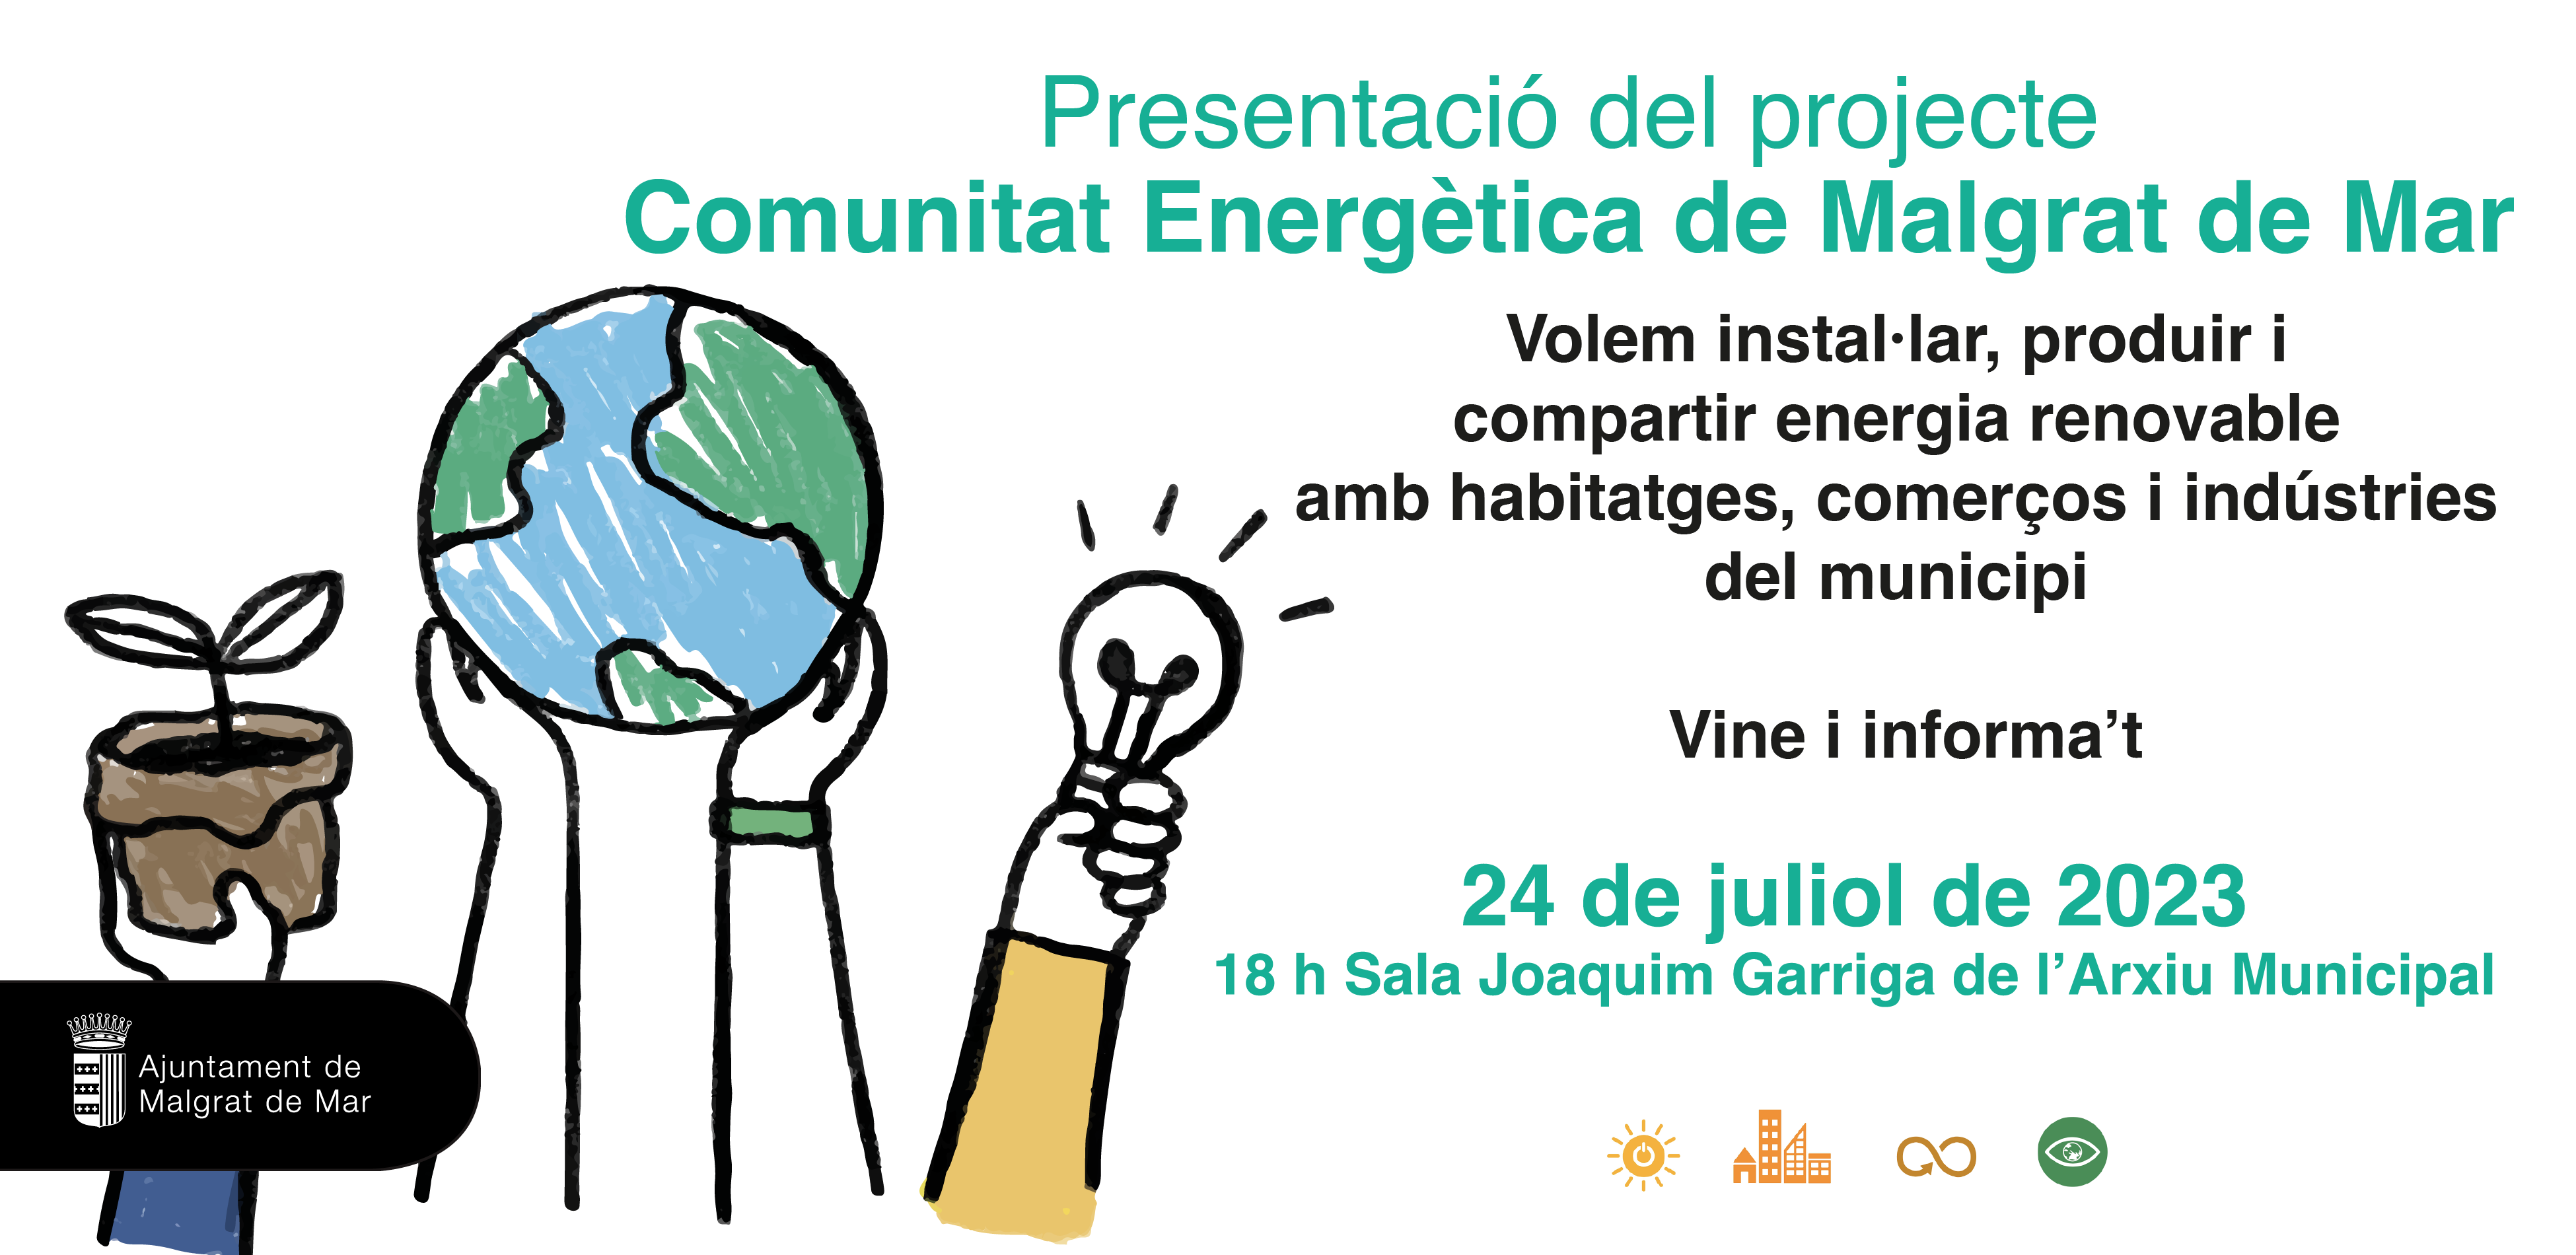 Reunió informativa sobre la creació d'una comunitat energètica a Malgrat, aquesta tarda